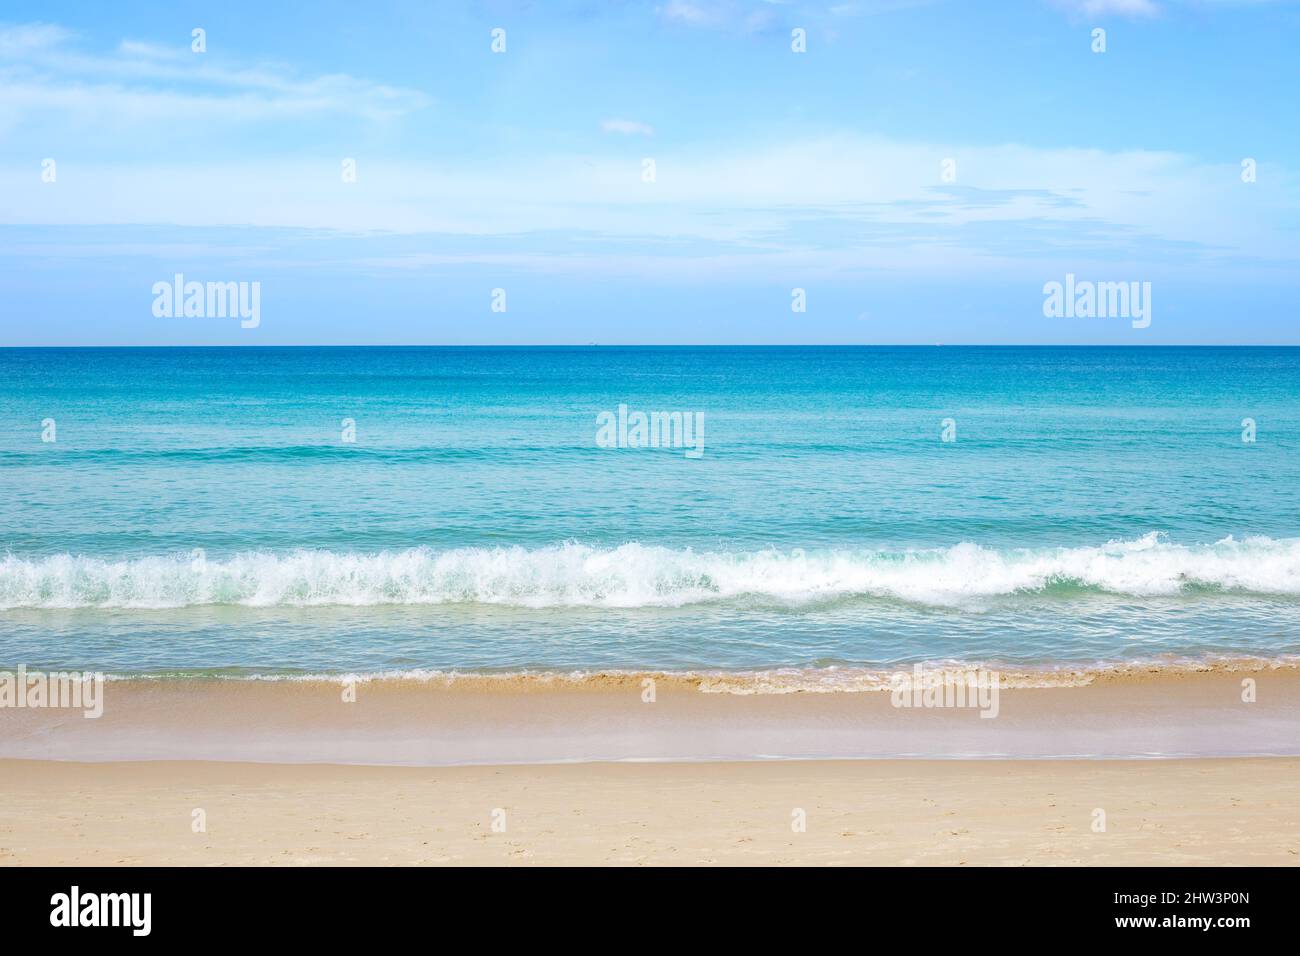 Seamless Horizon Where Azure Sky Meets Stock Photo 2306175953